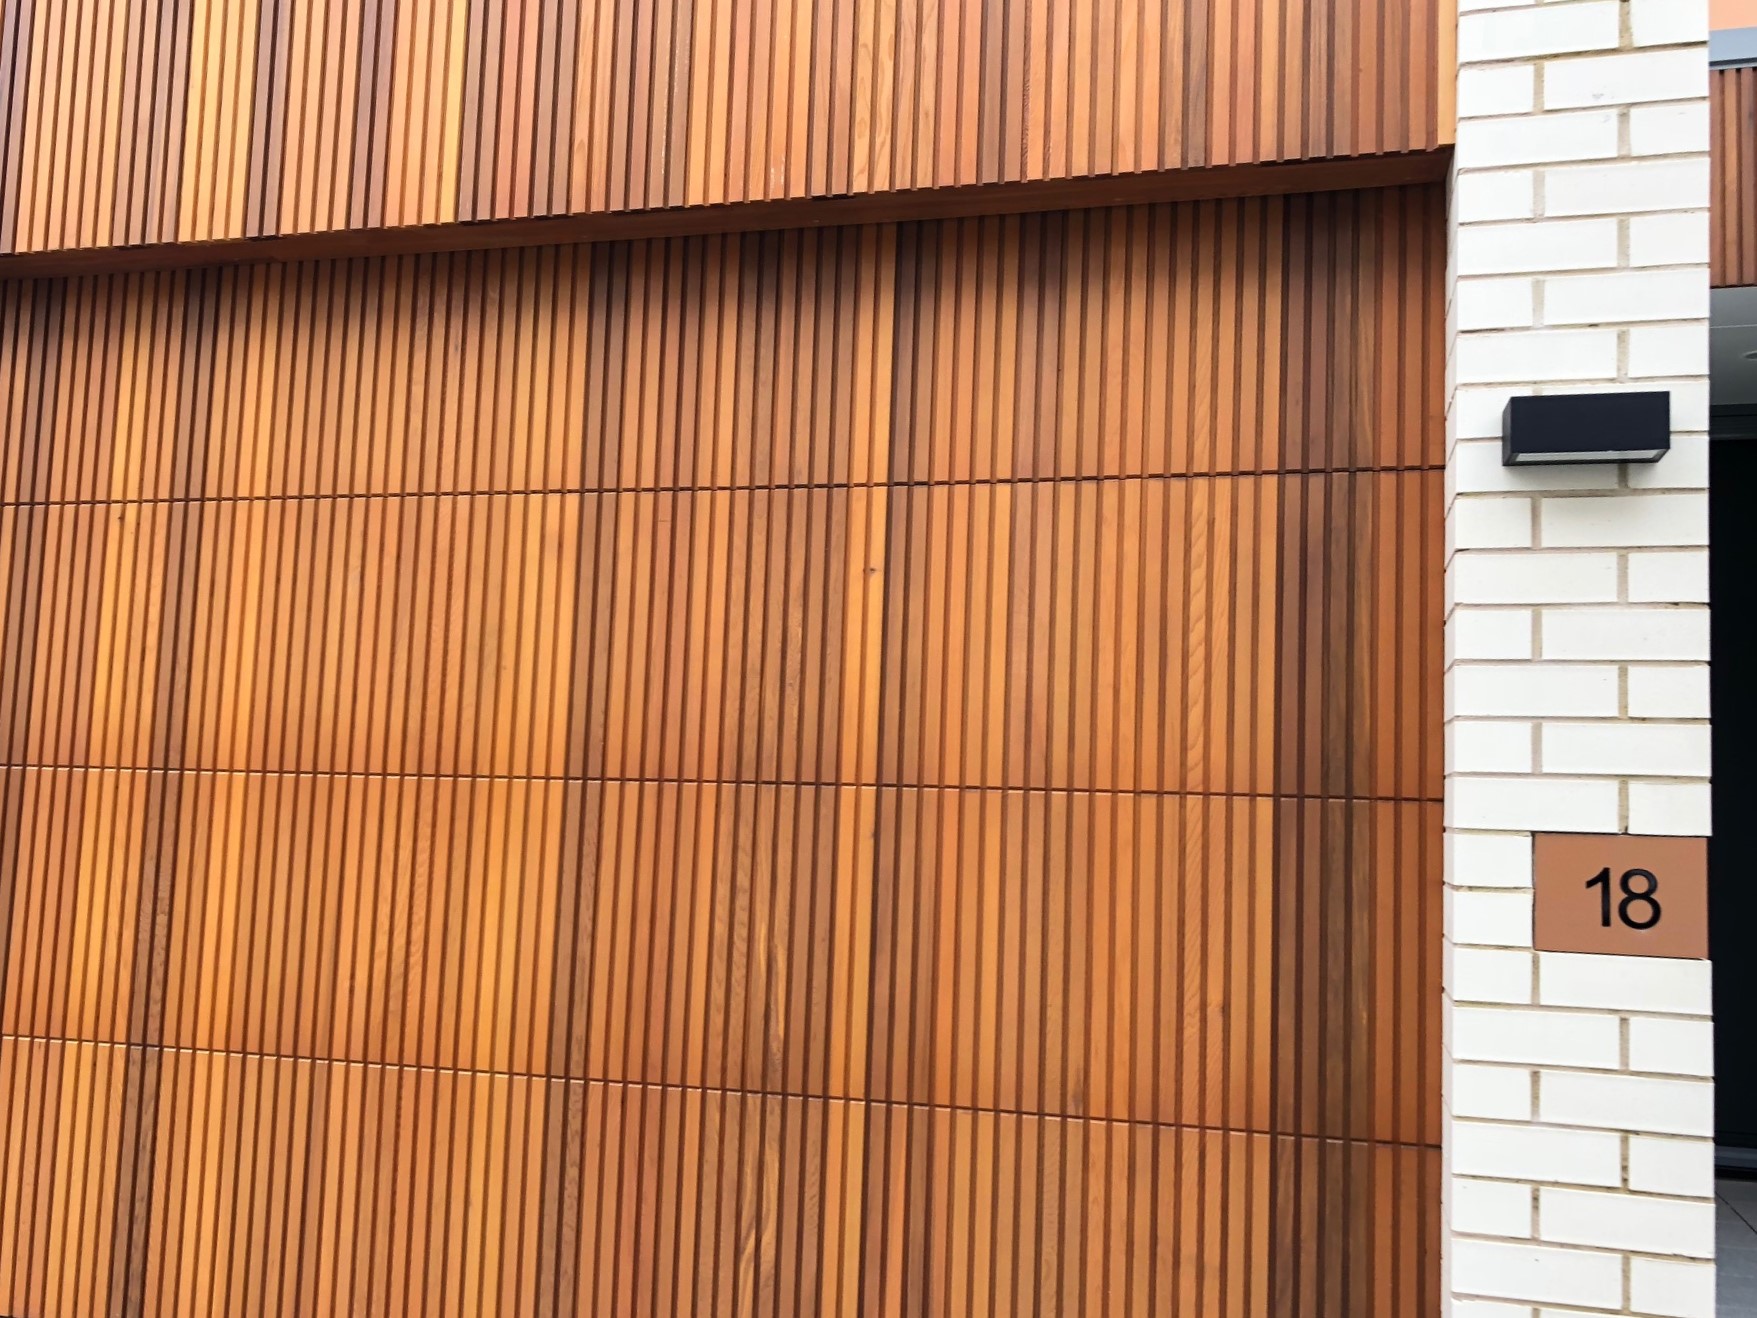 A wooden cedar wall